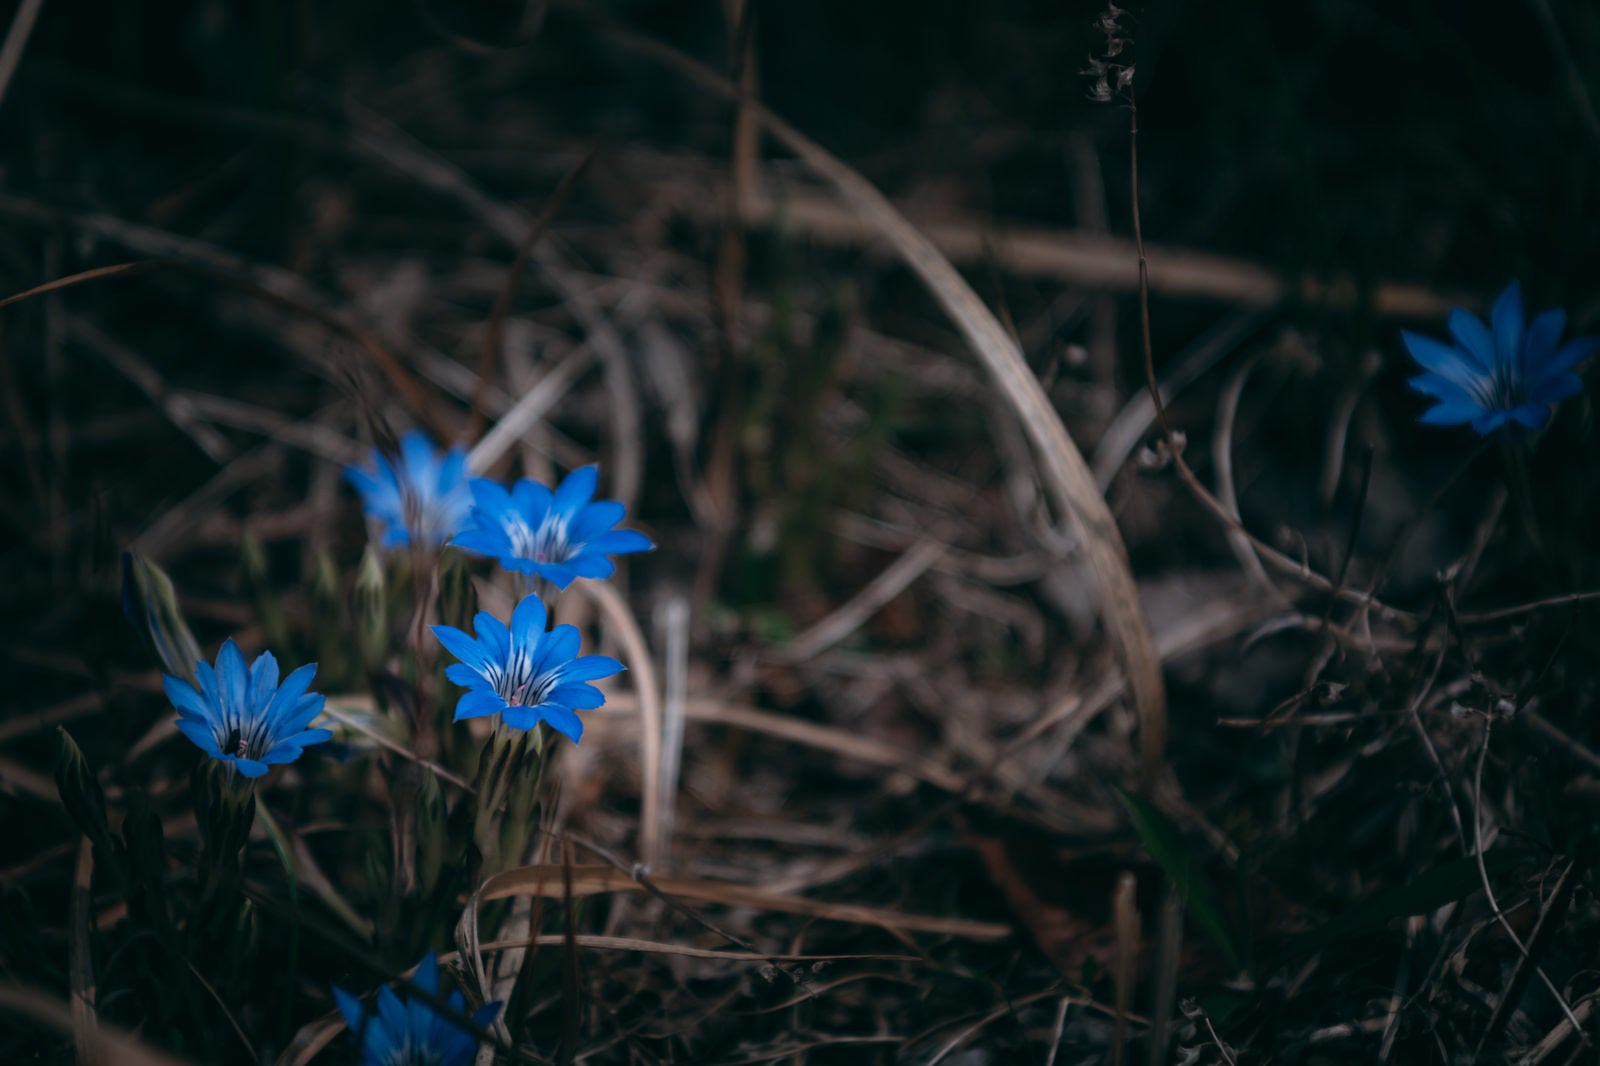 「まだ枯れた葉が多い中鮮やかな青い花を咲かせるハルリンドウ」の写真